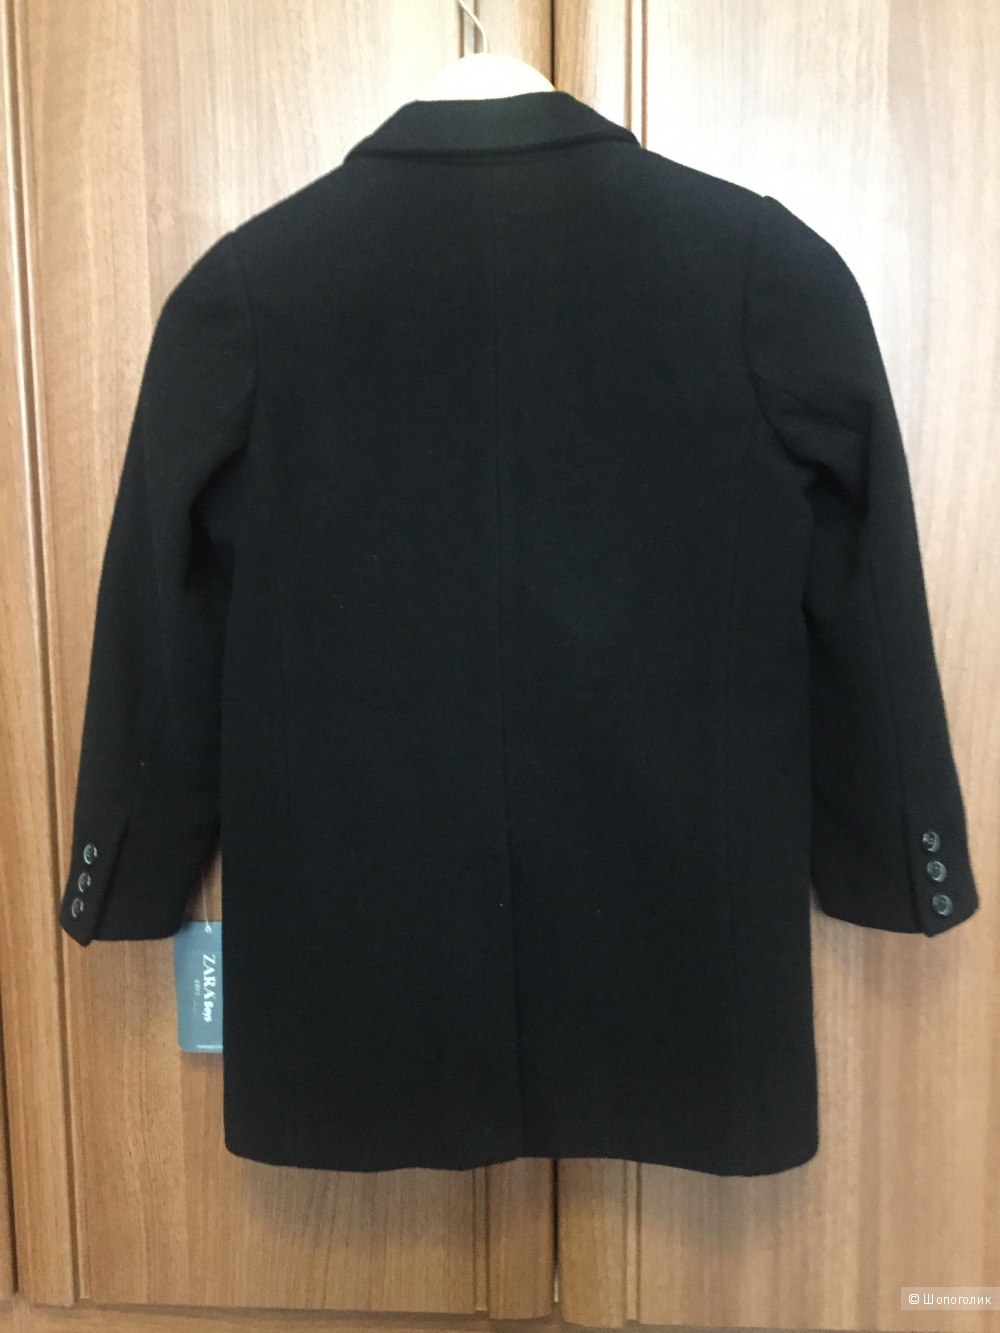 Пальто для мальчика шерстяное, новое, Zara, 7-8 лет, рост 128/134